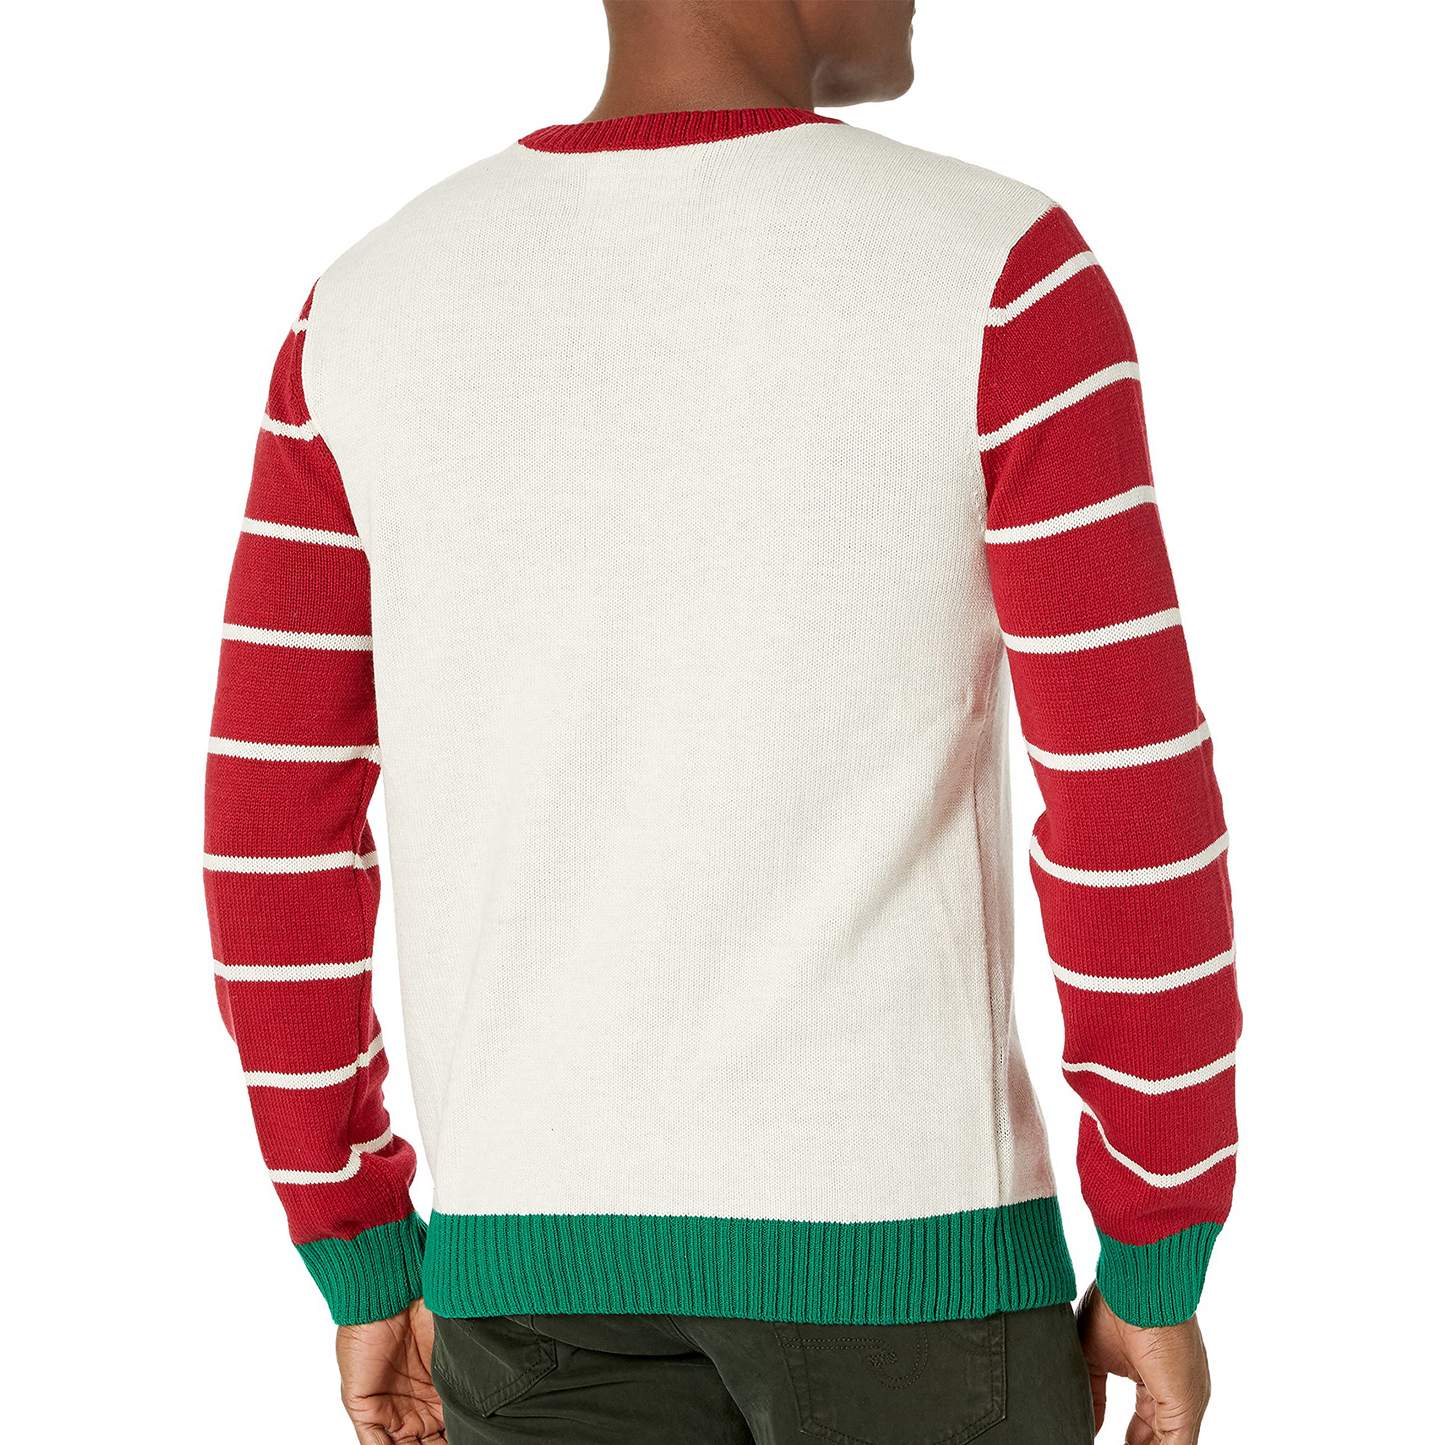 Elf Yourself Ugly Christmas Sweater Unisex